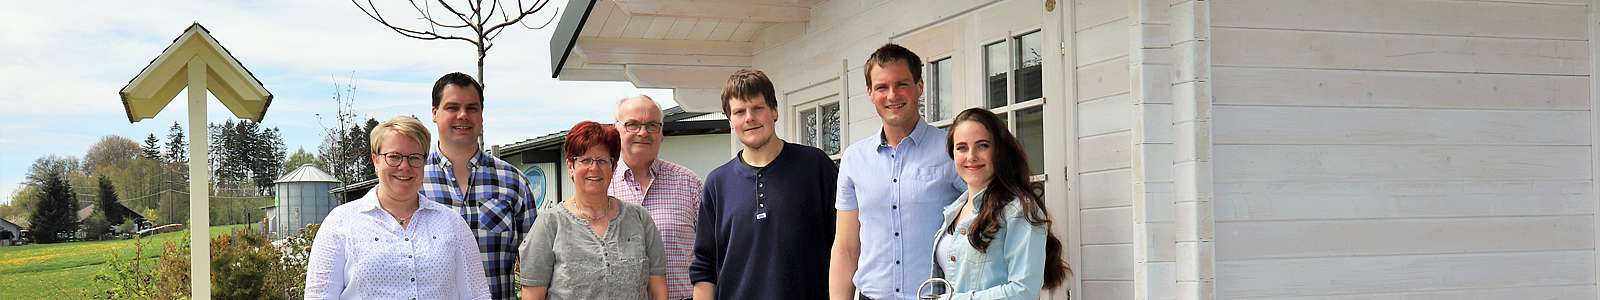 Familie Maier | Maiers frische Milchprodukte, Oberwihl-Hotzenwald